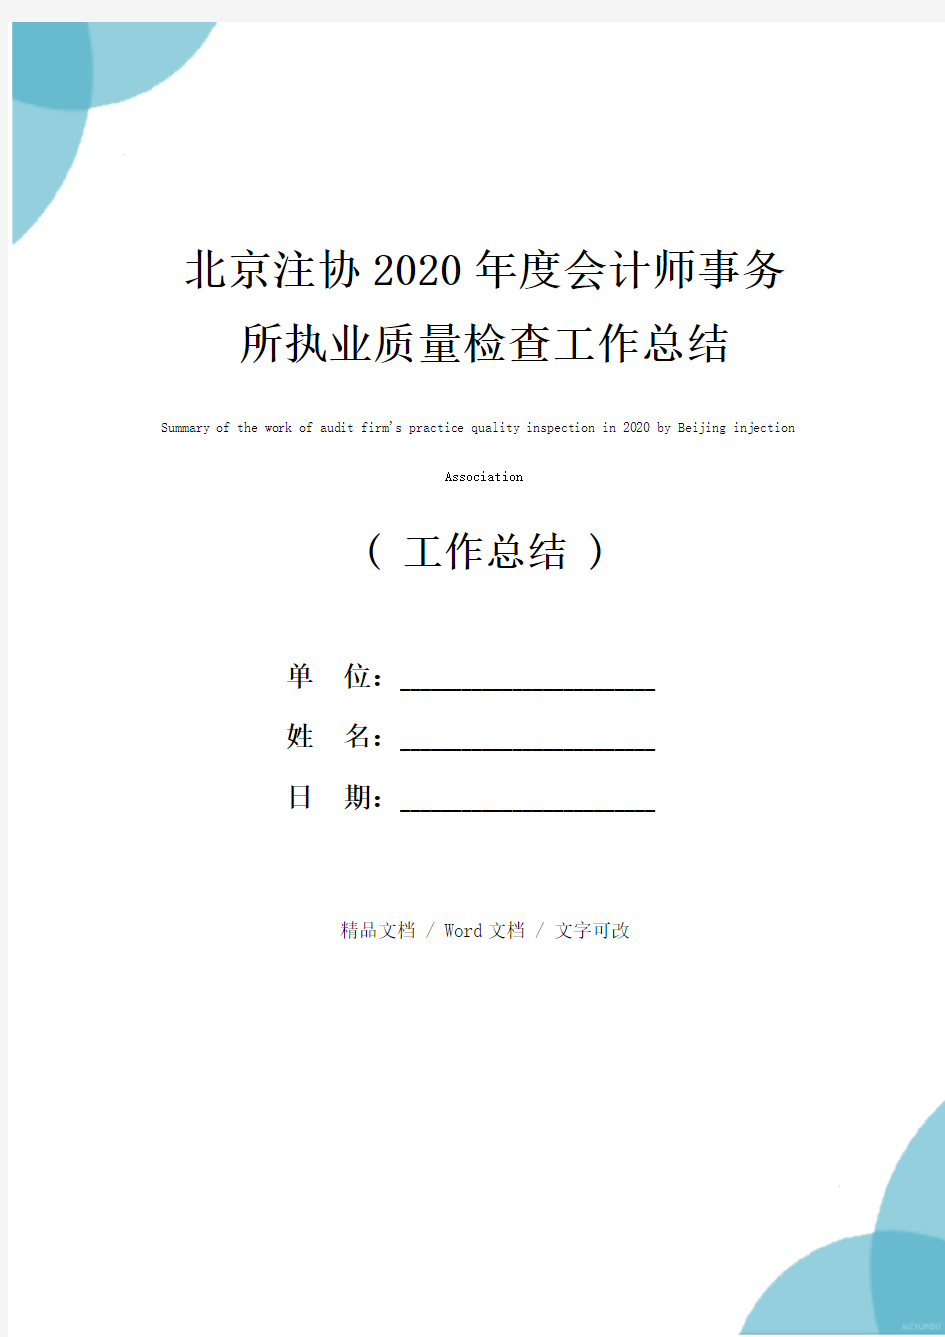 北京注协2020年度会计师事务所执业质量检查工作总结